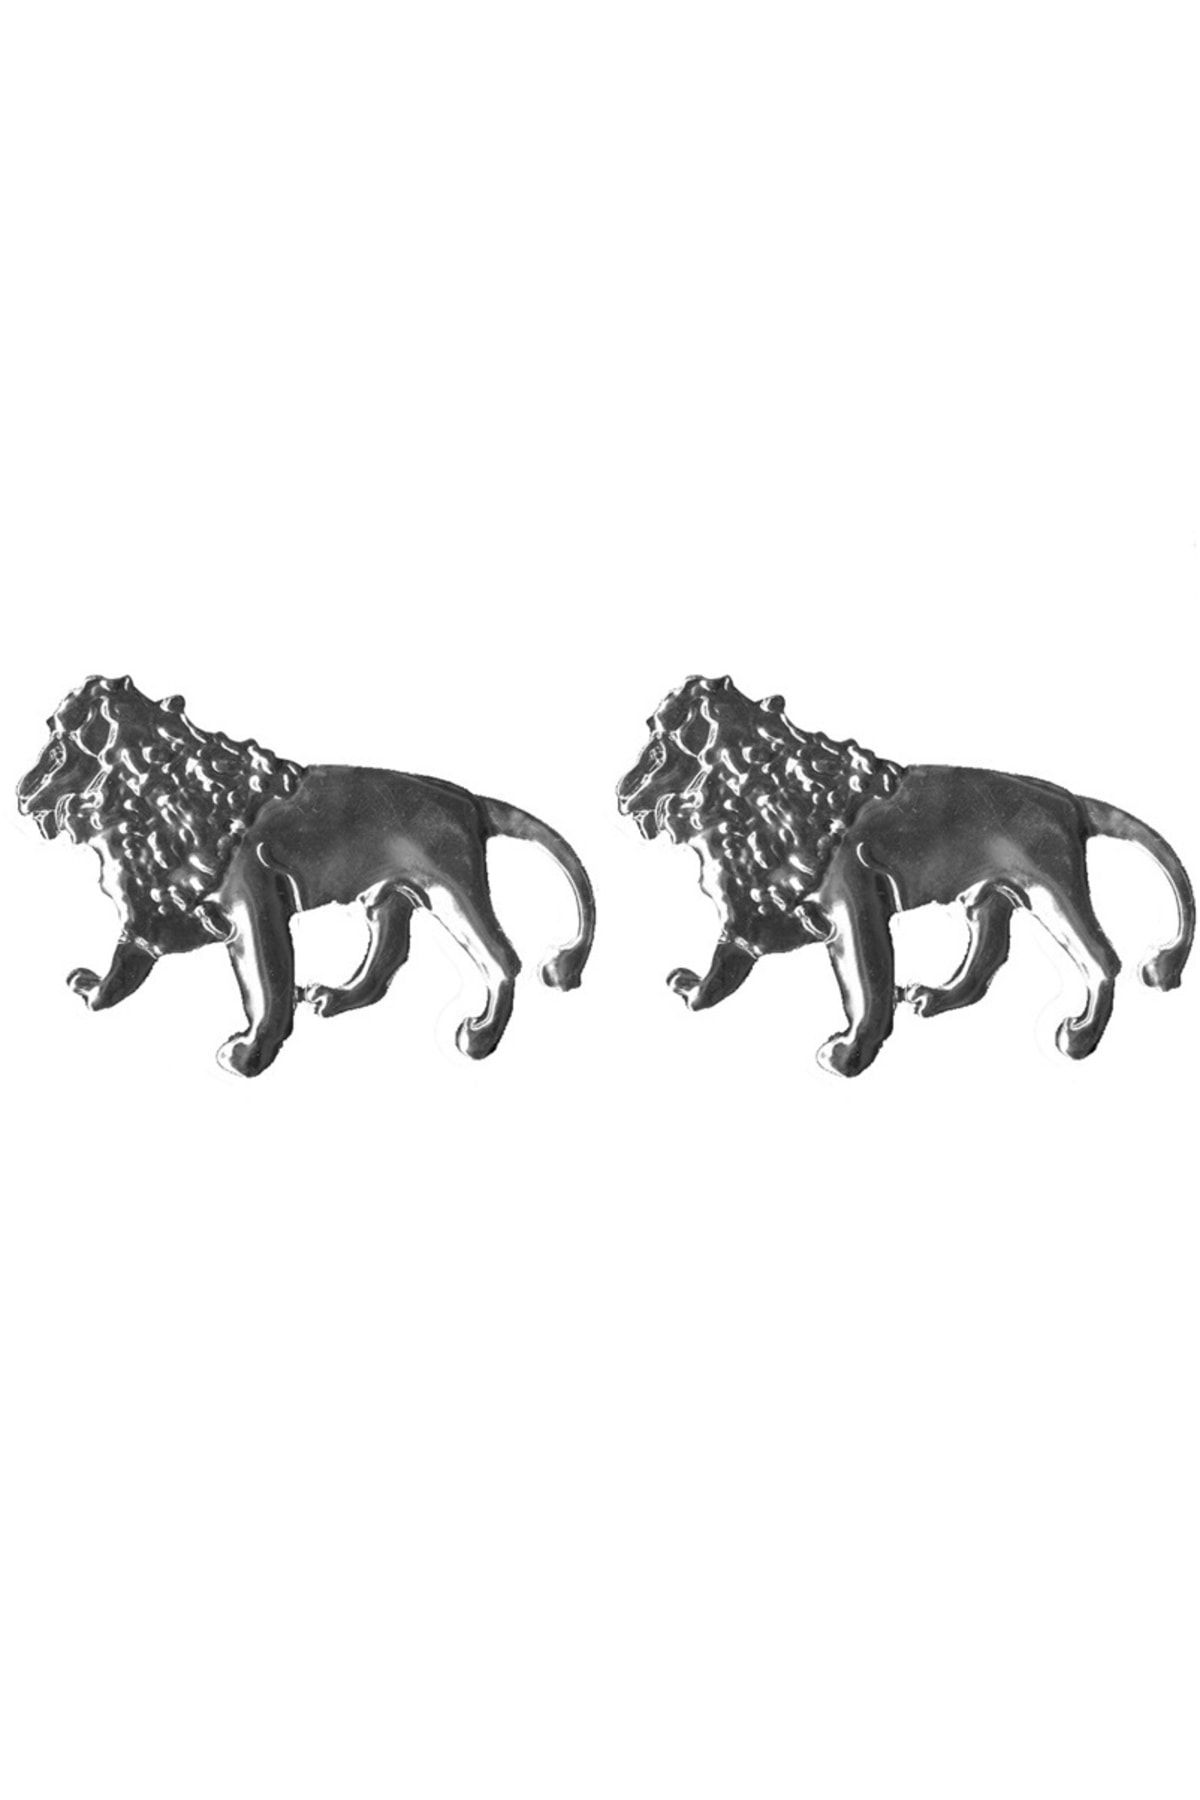 Genel Markalar Aslan Logo Araba - Aslan Amblem - Aslan Krom Sticker - Dekoratif Araba Aslan Krom Sticker - Gümüş